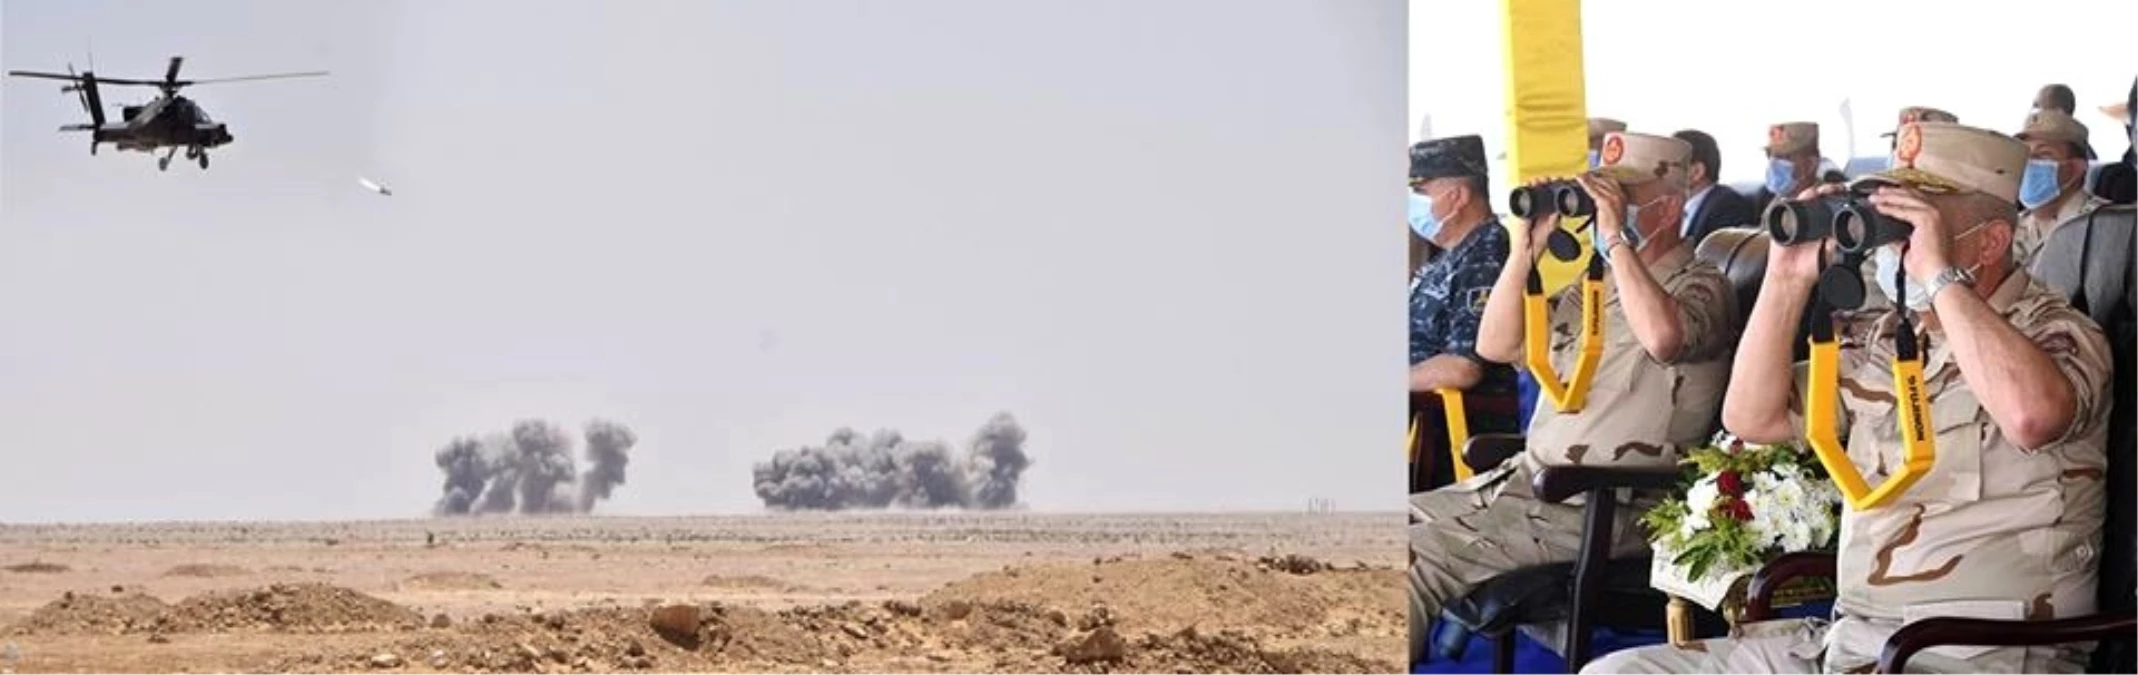 Mısır ordusu, Libya sınırında askeri tatbikat gerçekleştirdi